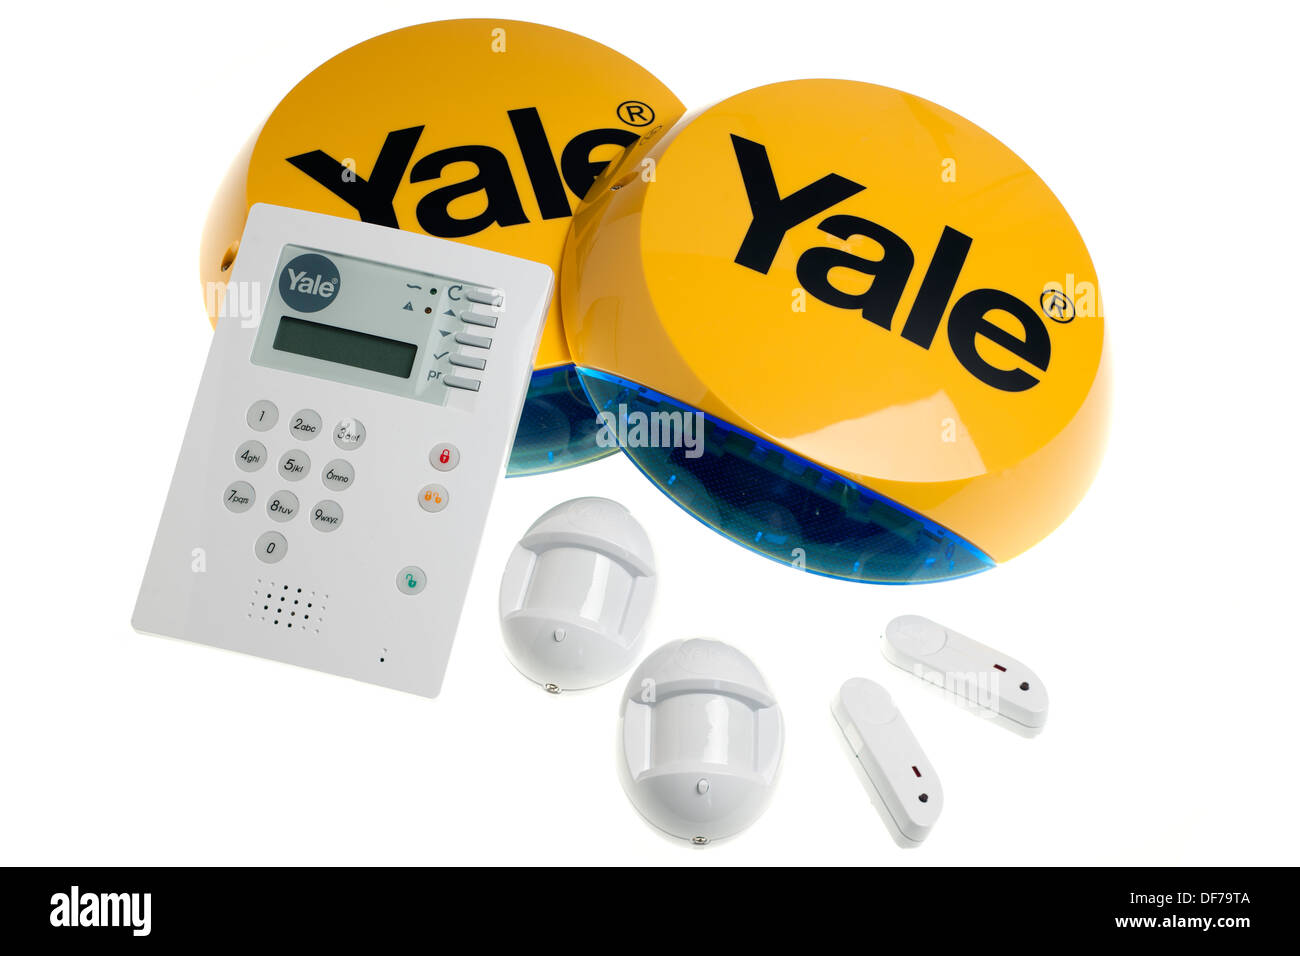 La Yale senza fili wireless allarme premium Foto Stock